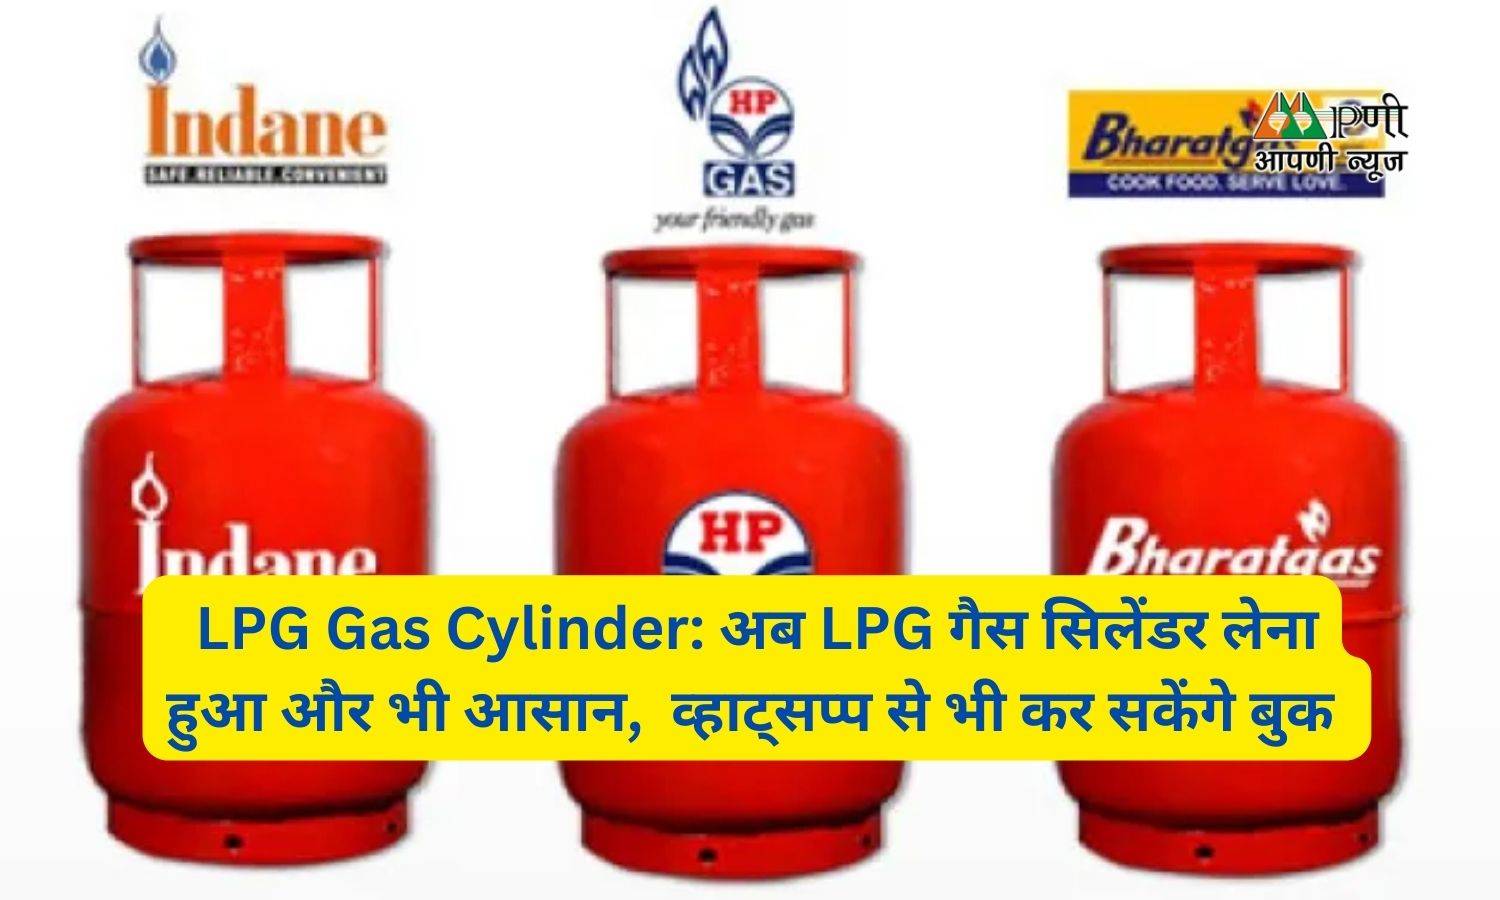 LPG Gas Cylinder: अब LPG गैस सिलेंडर लेना हुआ और भी आसान,  व्हाट्सप्प से भी कर सकेंगे बुक